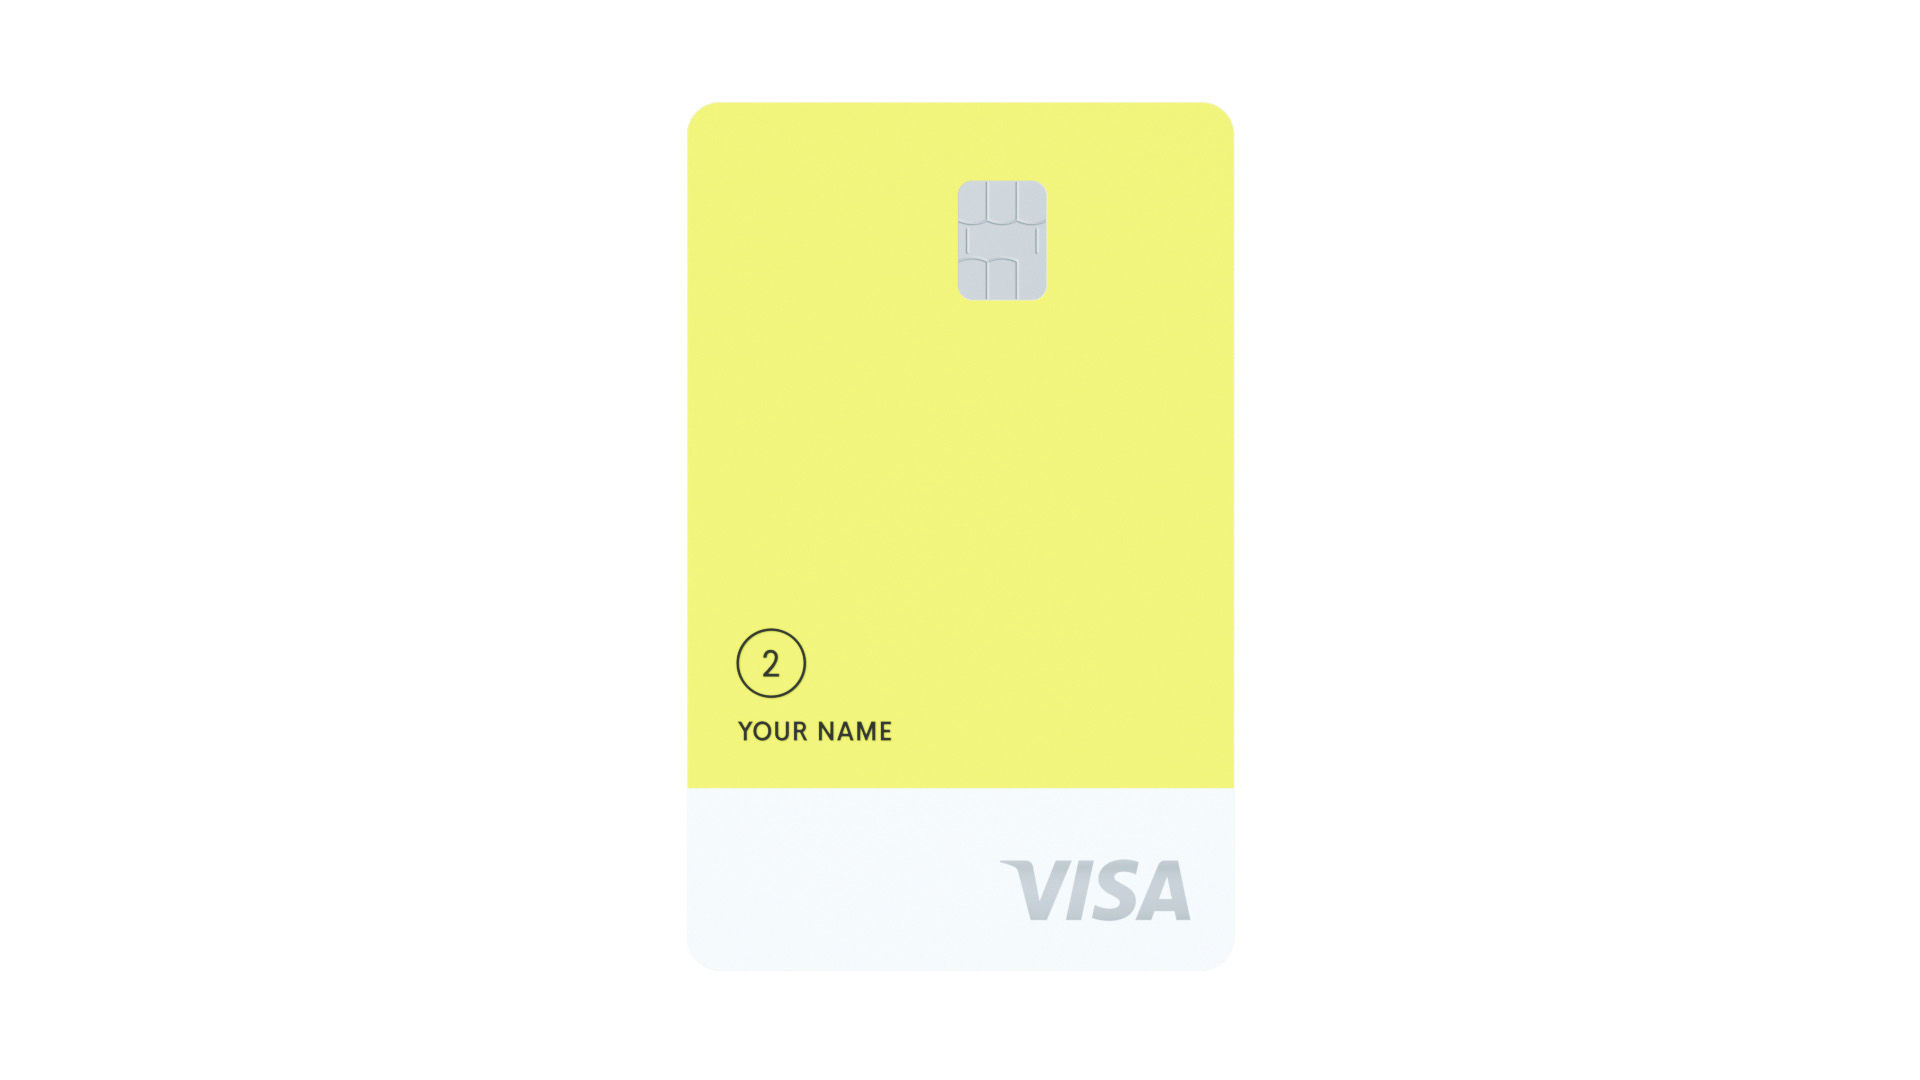 Petal® 2 “Cash Back, No Fees” Visa® credit card